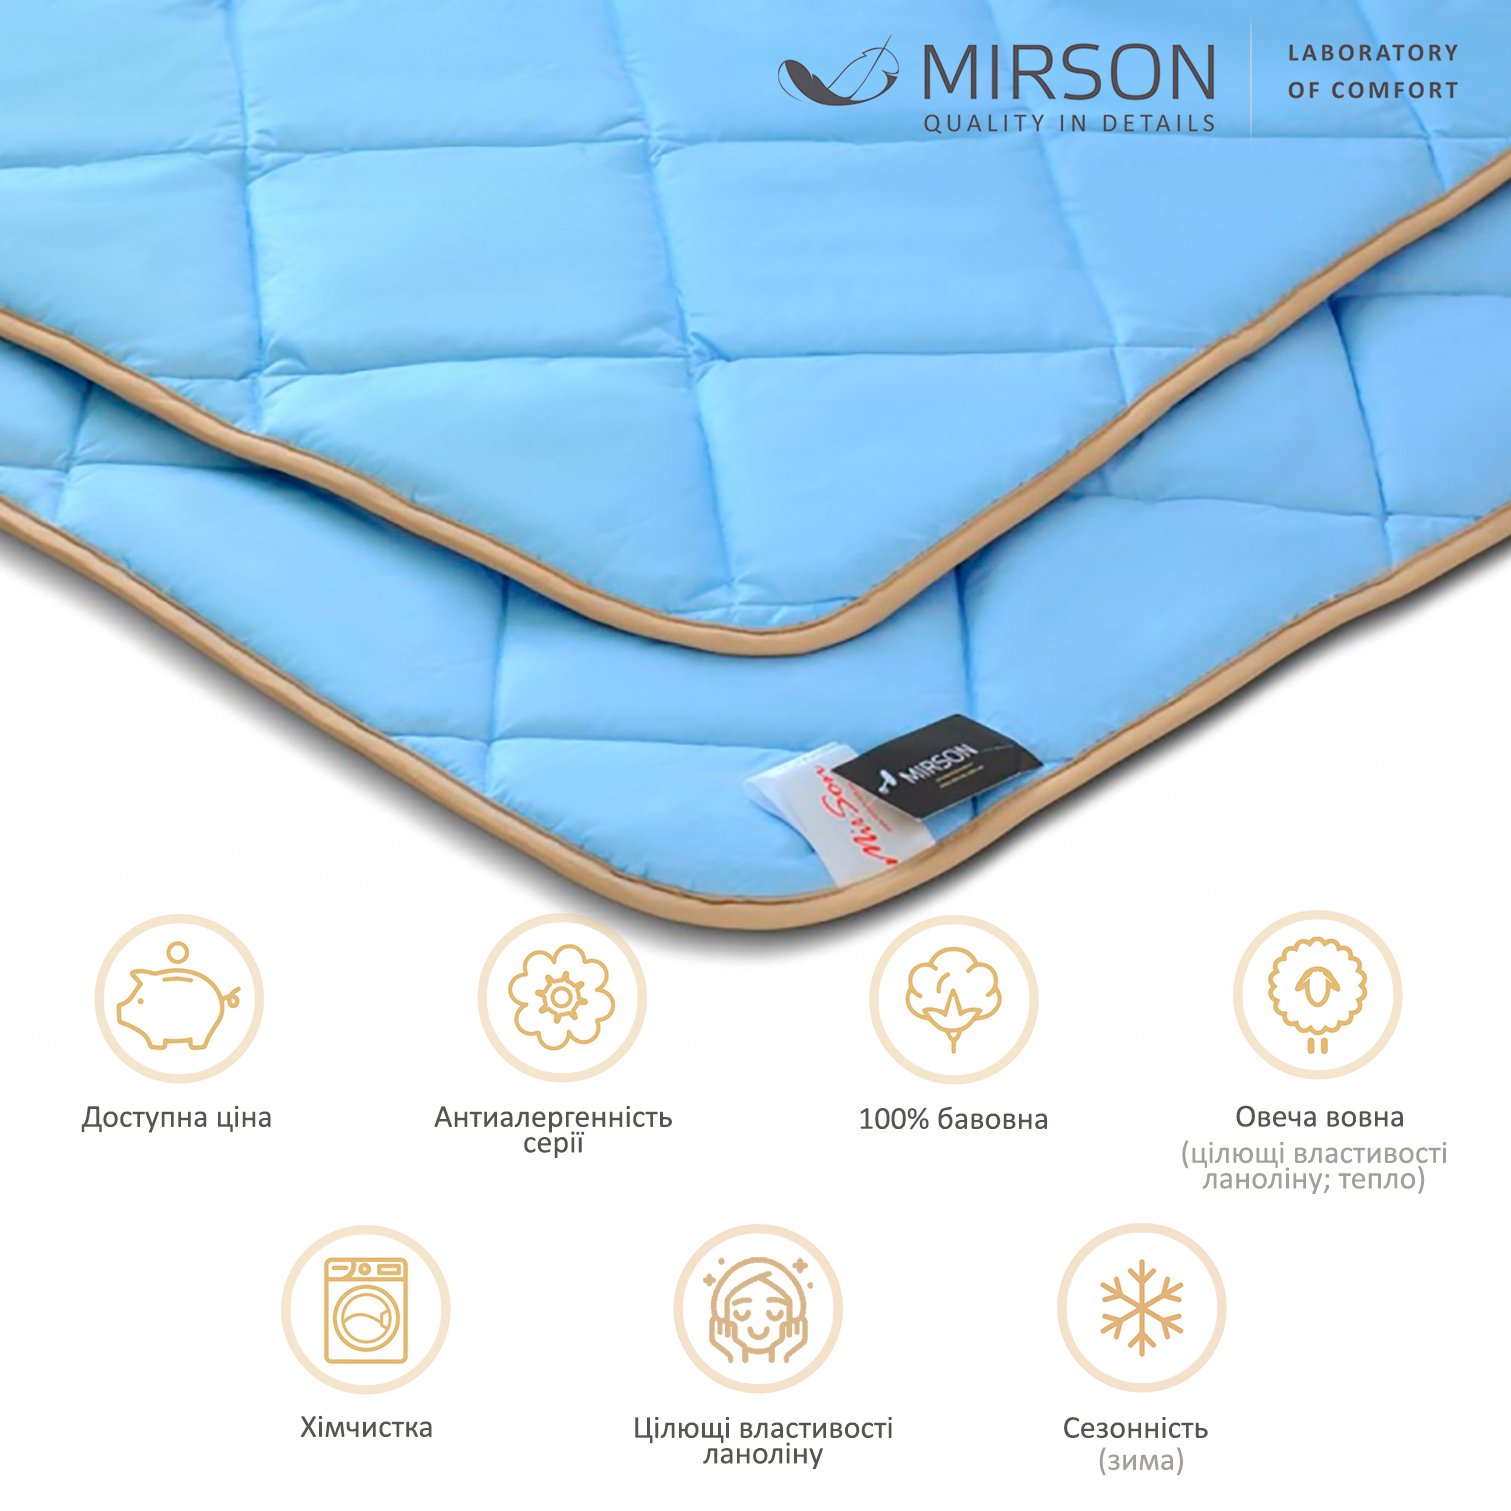 Одеяло шерстяное MirSon Valentino №0338, зимнее, 200x220 см, голубое - фото 5